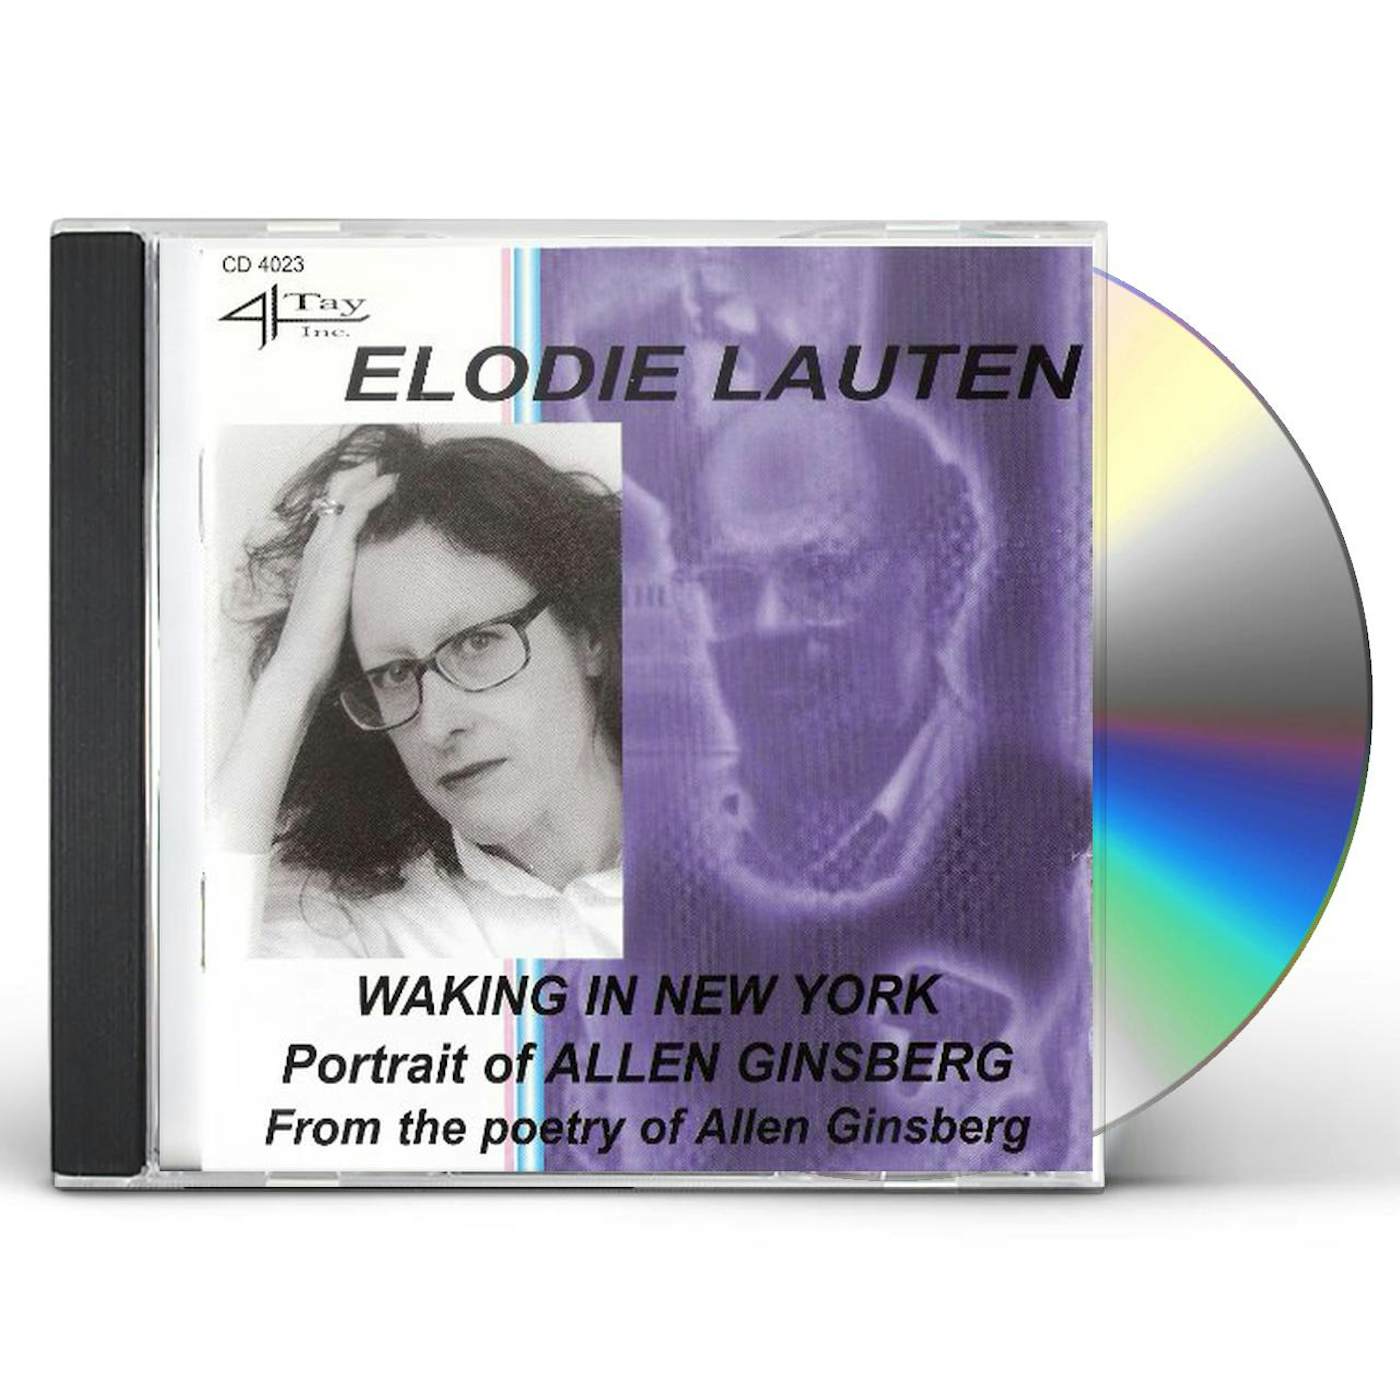 Elodie Lauten WAKING IN NEW YORK CD